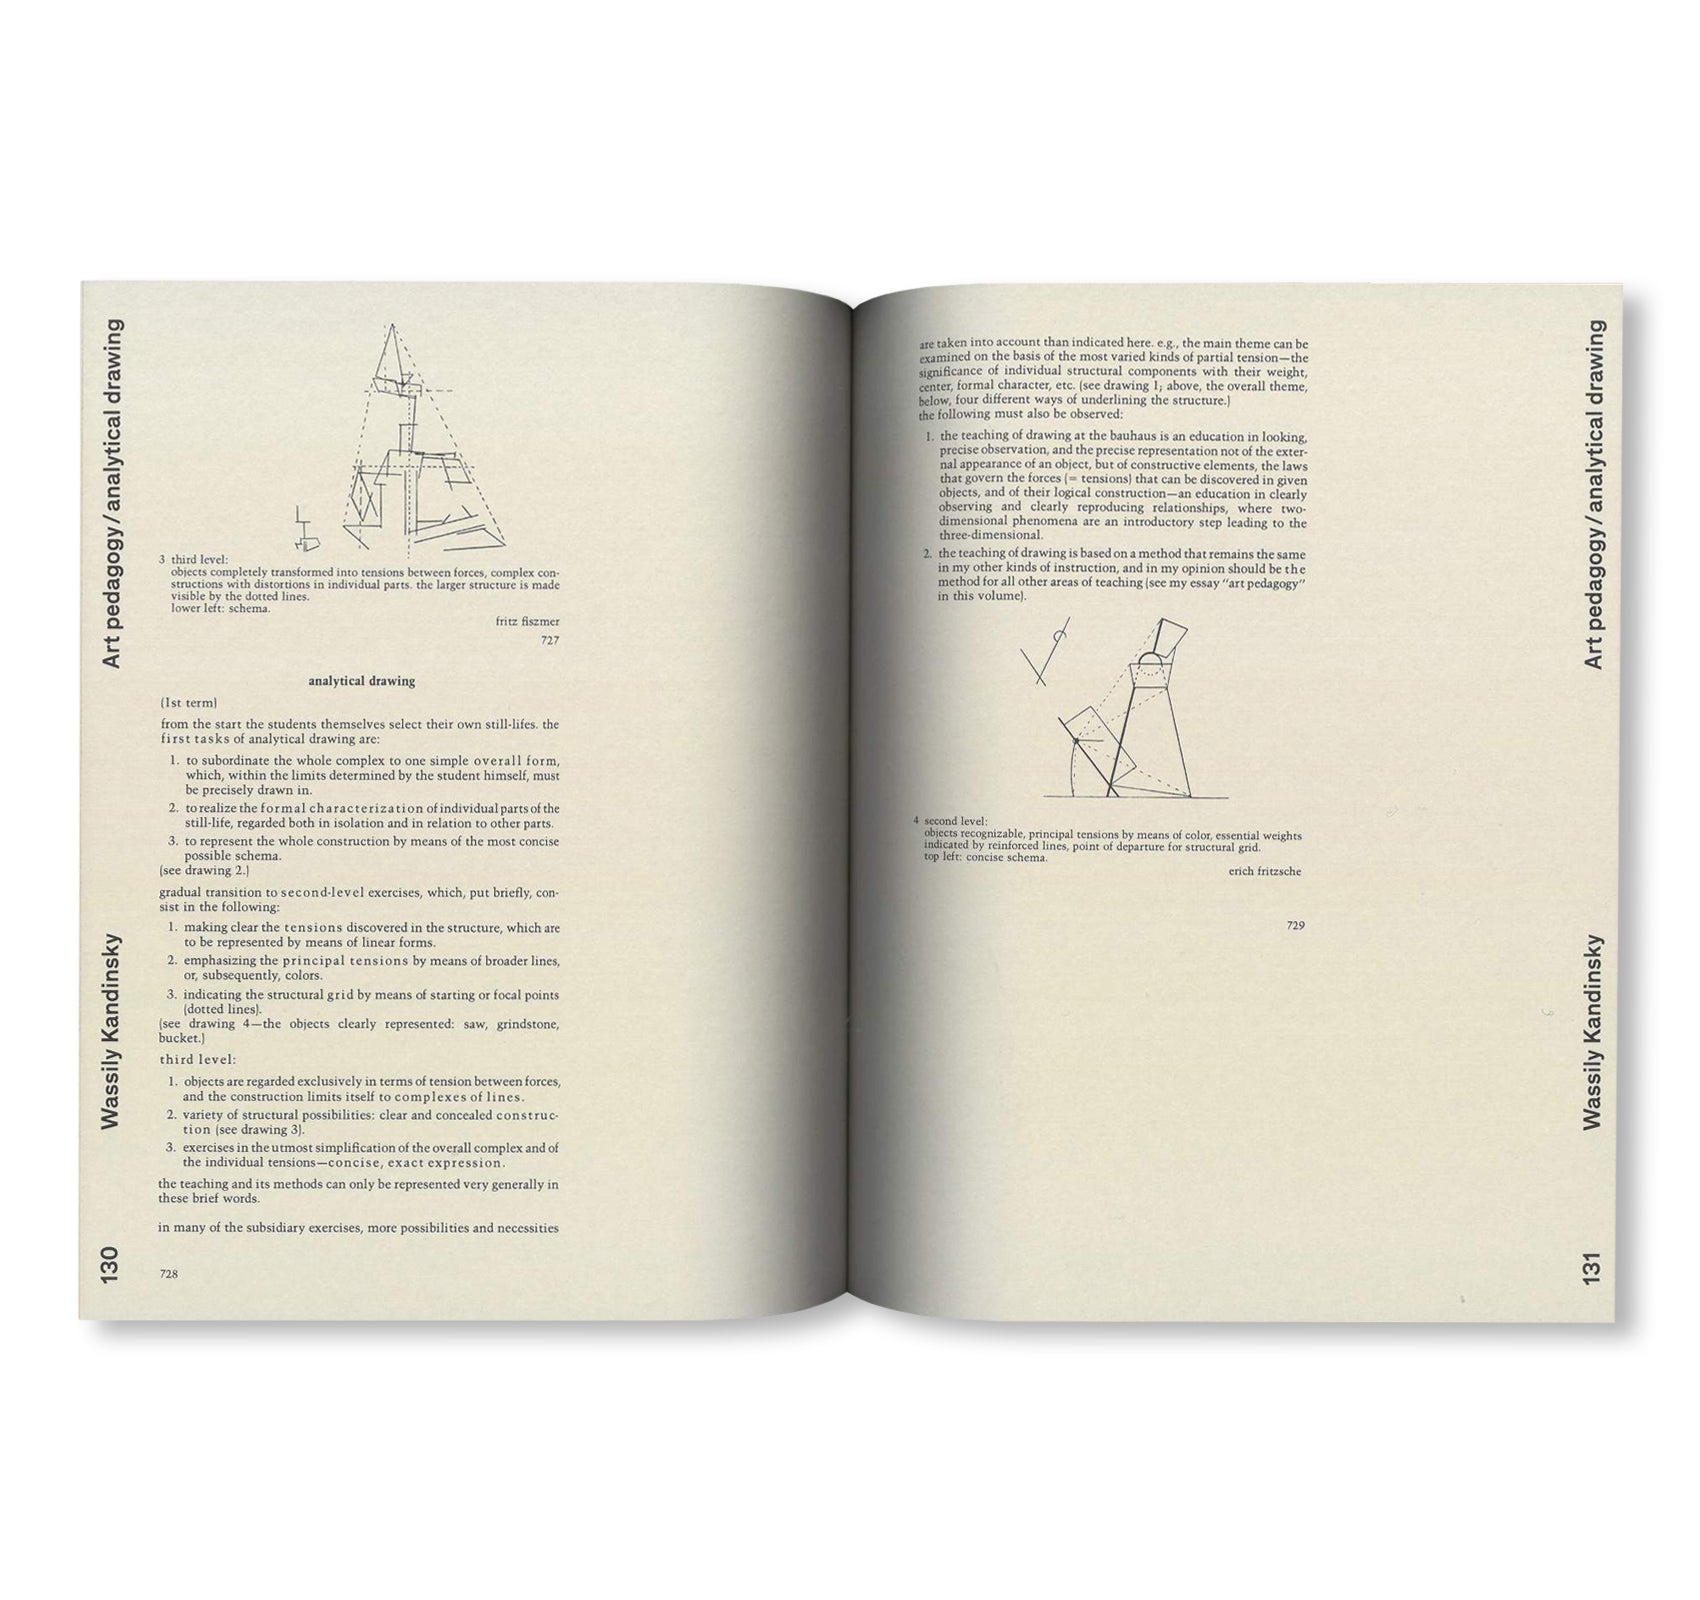 DESIGN REHEARSALS / Edition Bauhaus 57 by Stiftung Bauhaus Dessau